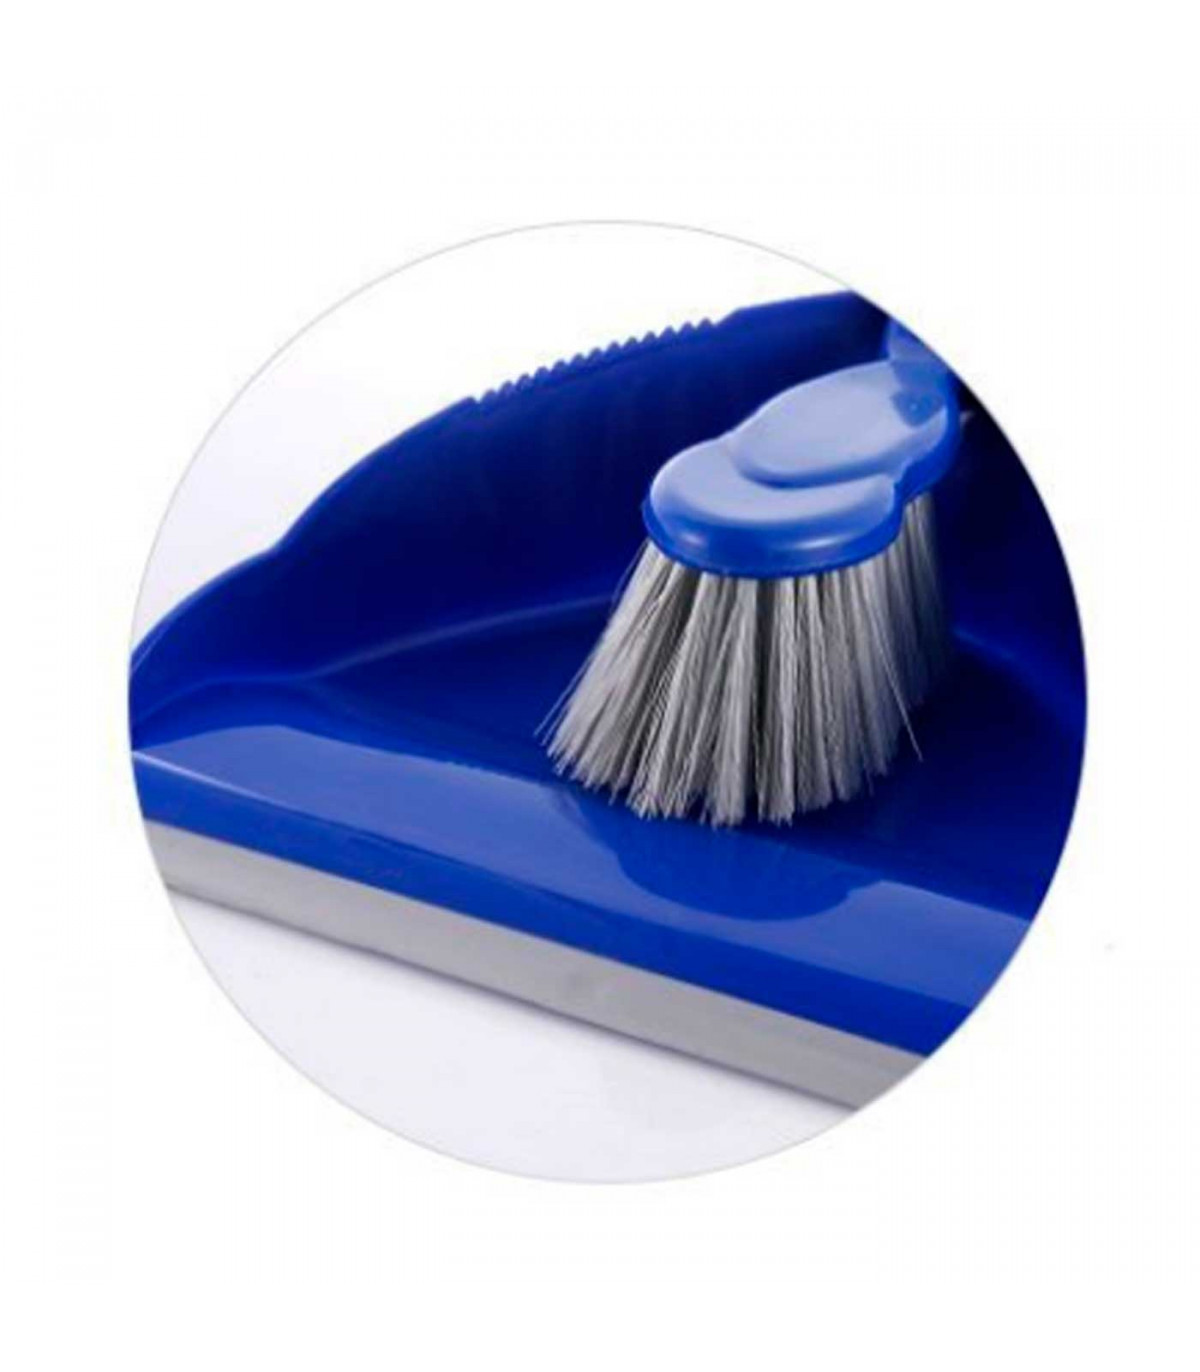 Cepillo, Artículos de limpieza para el hogar, Vikan As, Herrajes,  Herramienta, Azul eléctrico, cepillo, limpieza, azul eléctrico png